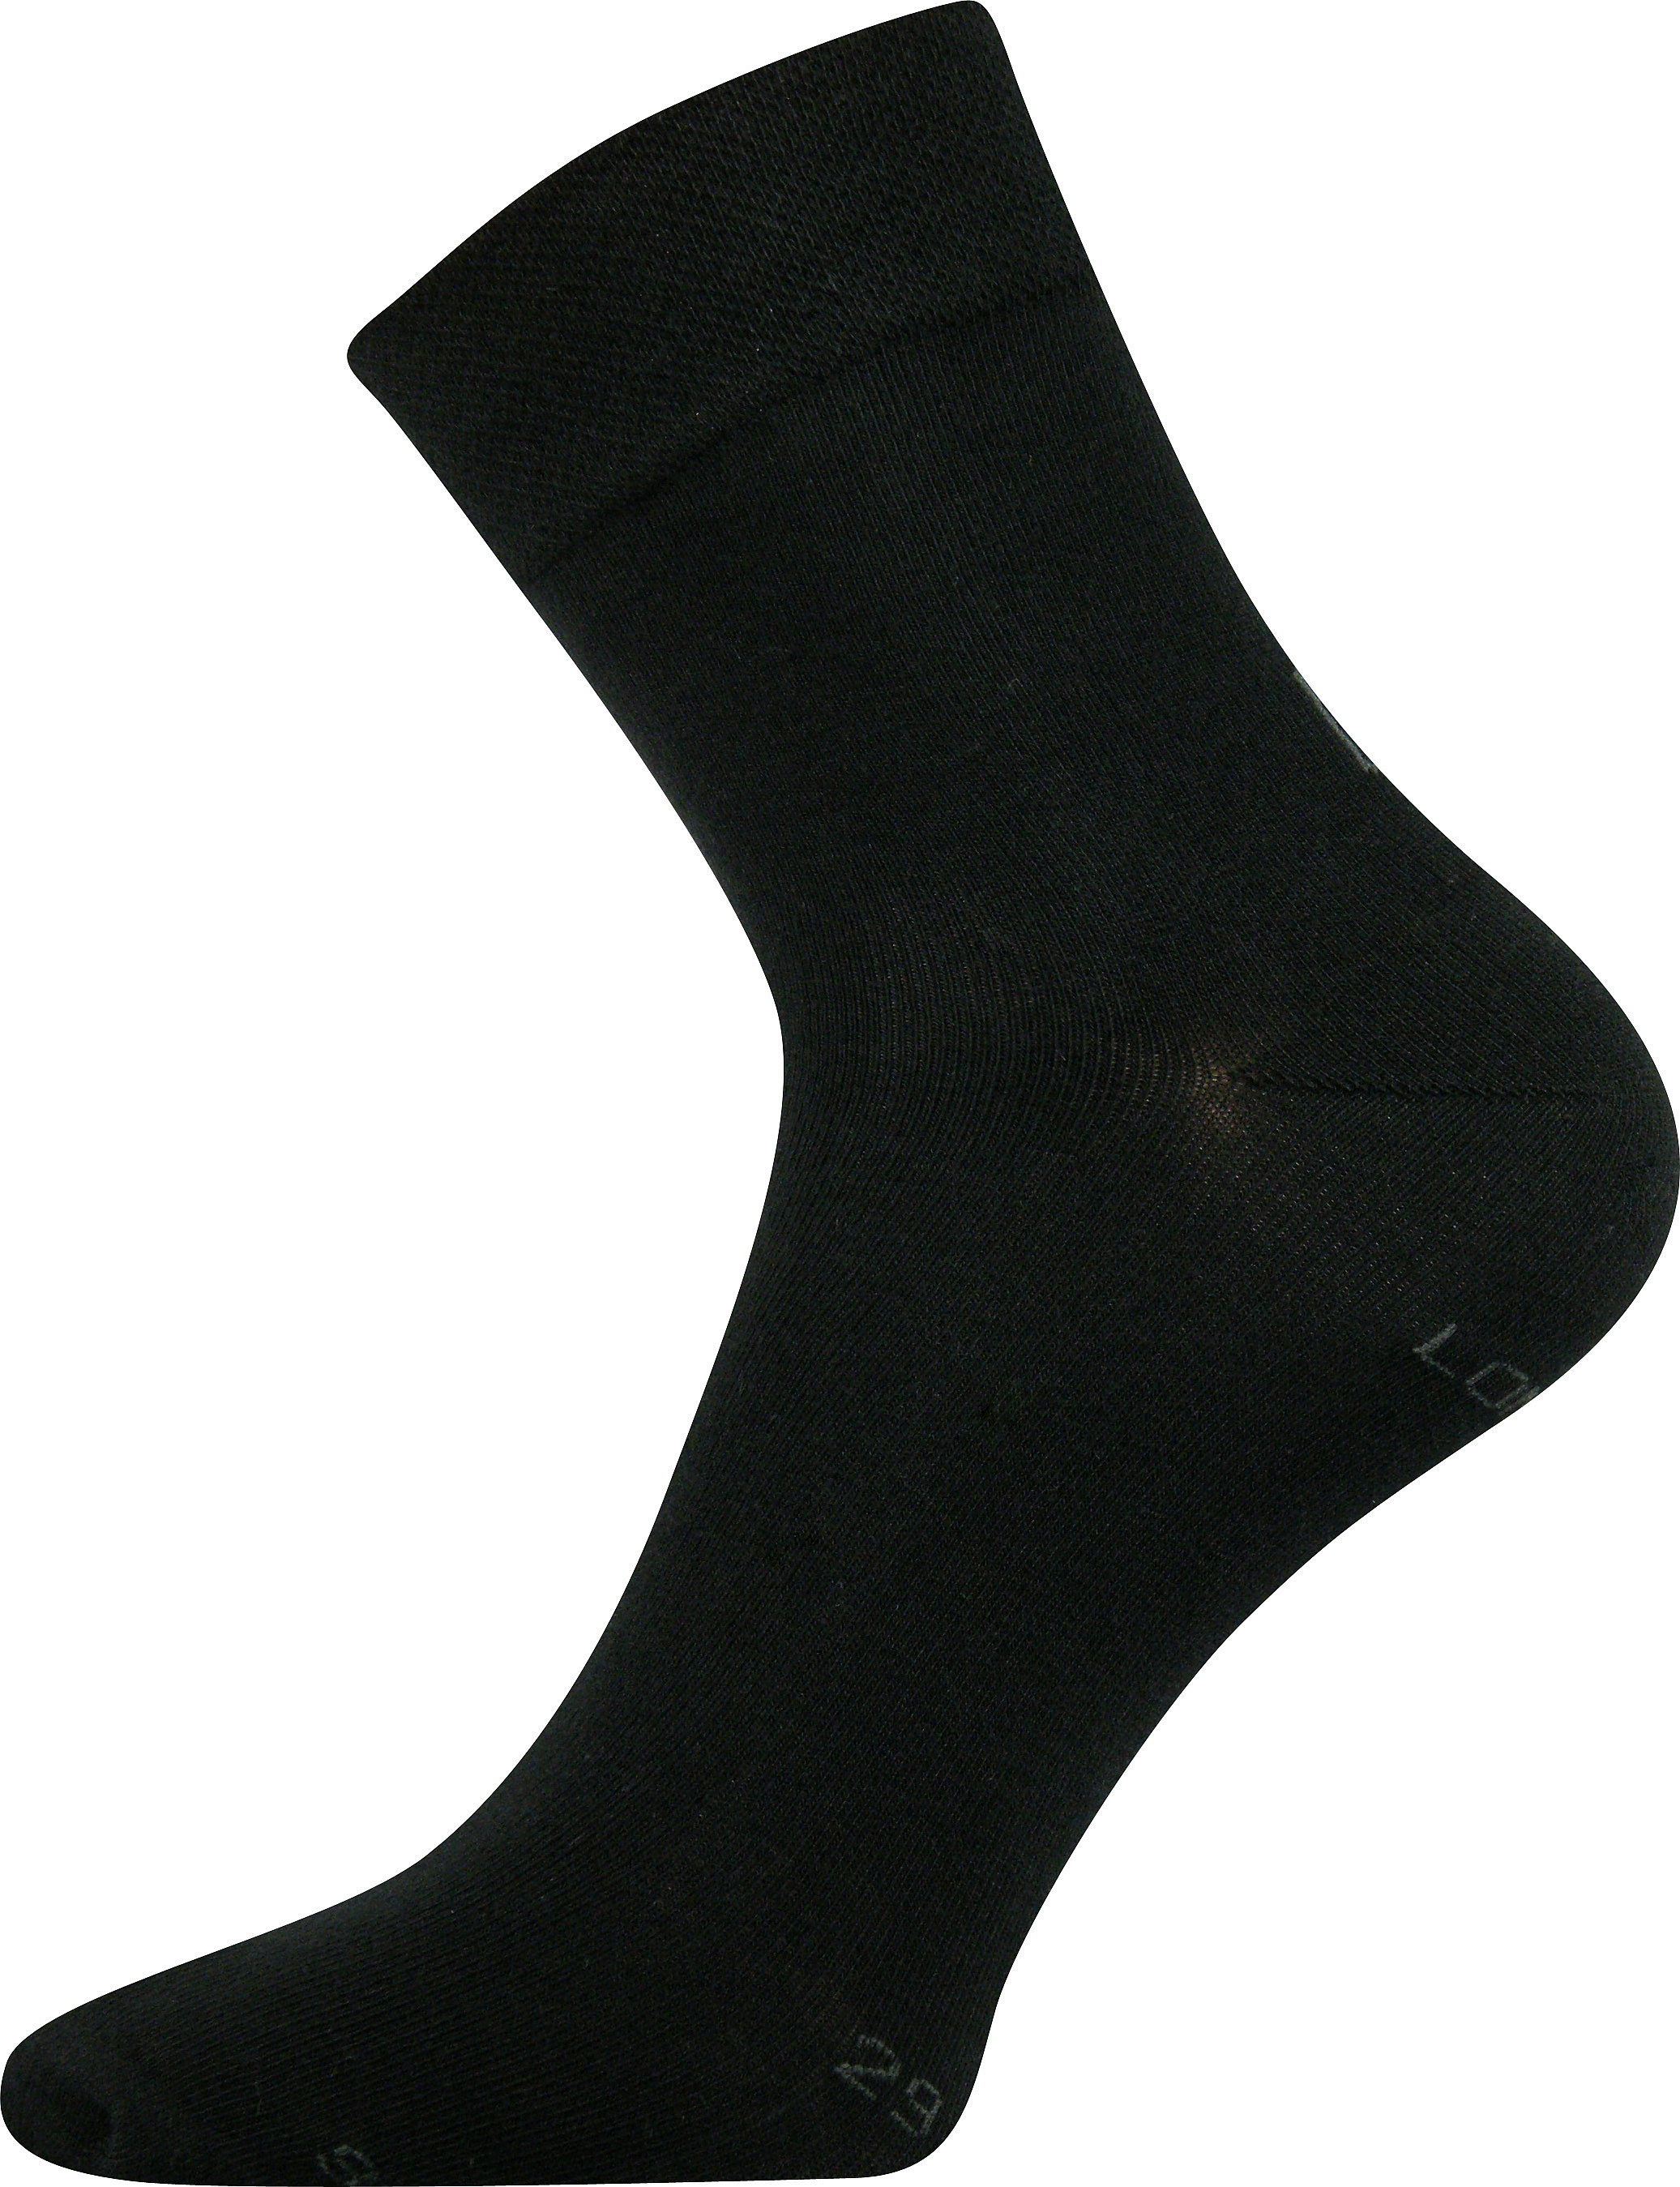 Ponožky společenské Lonka Haner - černé, 47-50